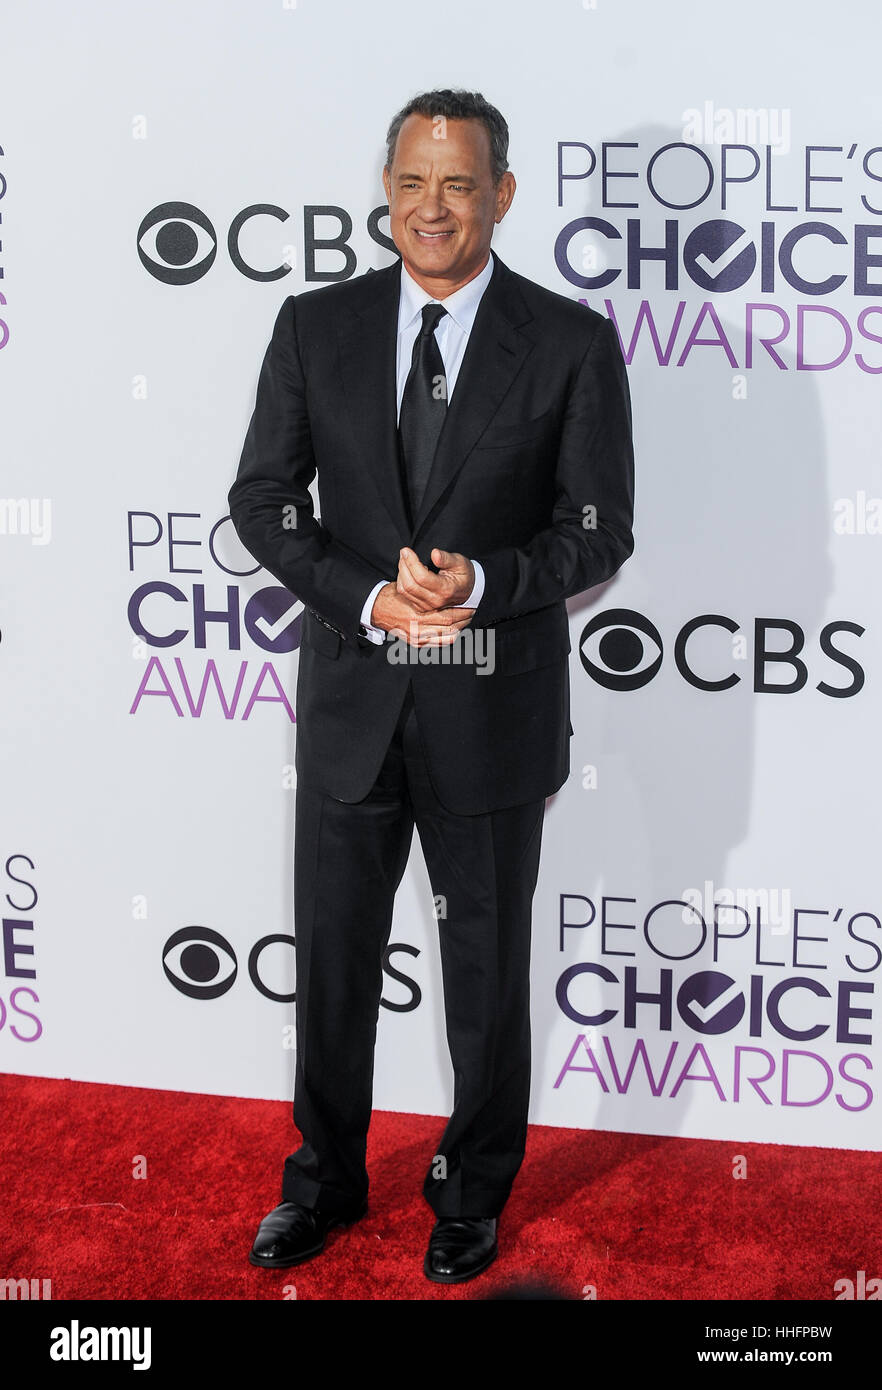 Los Angeles, USA. 18 janvier, 2017. Tom Hanks arrive pour le People's Choice Awards au Theatre de Los Angeles. Credit : Chaoqun Zhang/Xinhua/Alamy Live News Banque D'Images